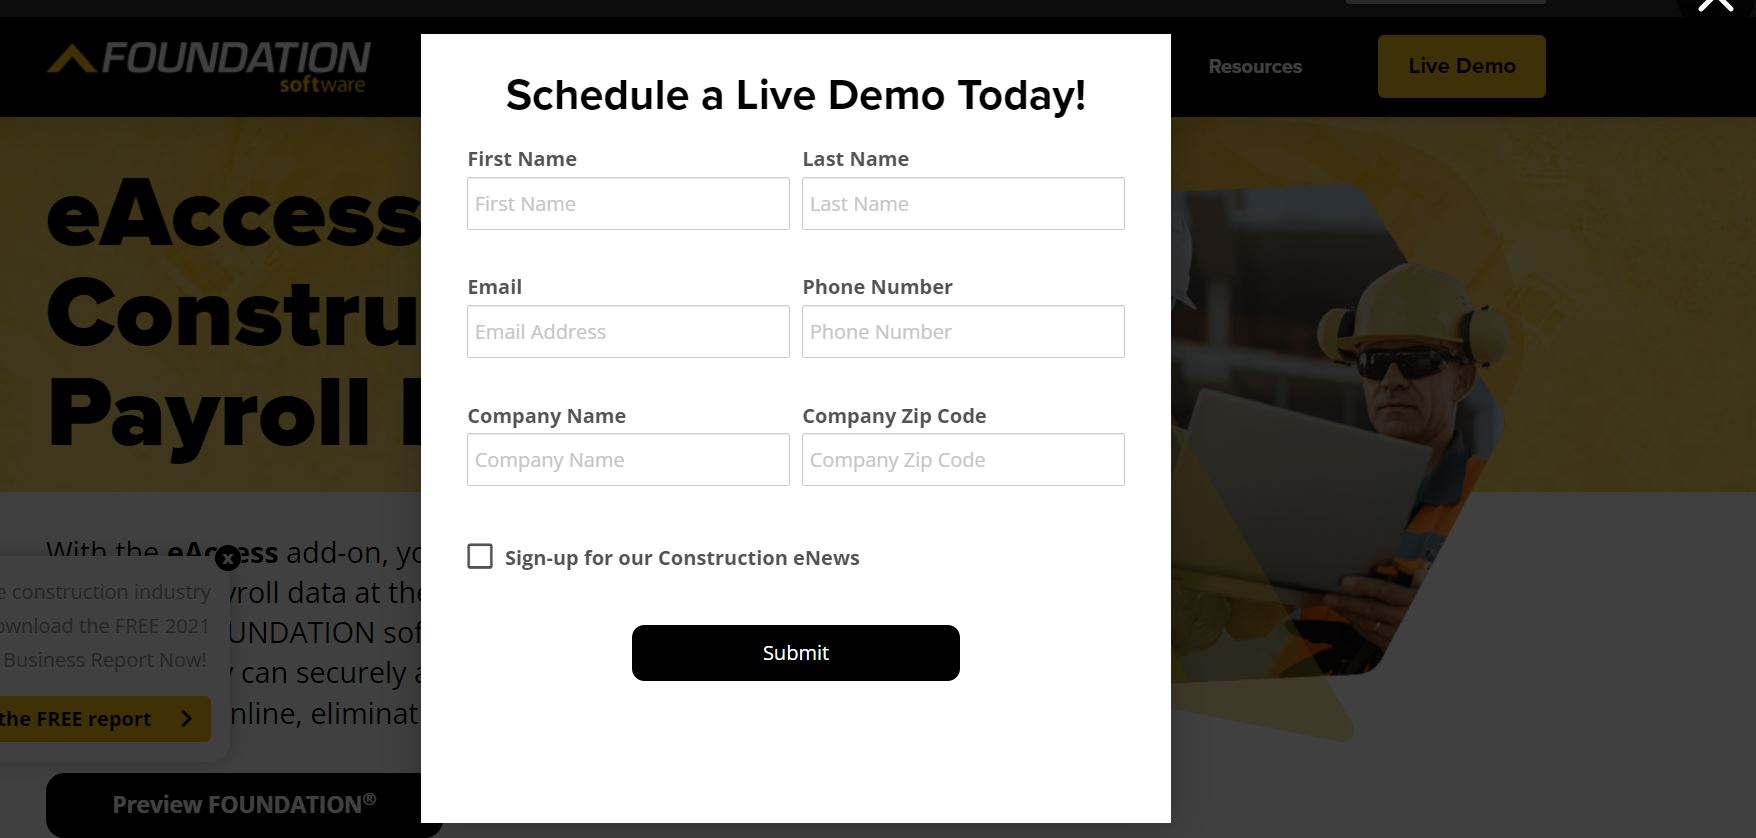 Screenshot of the foundationeaccess Schedule a Live Demo